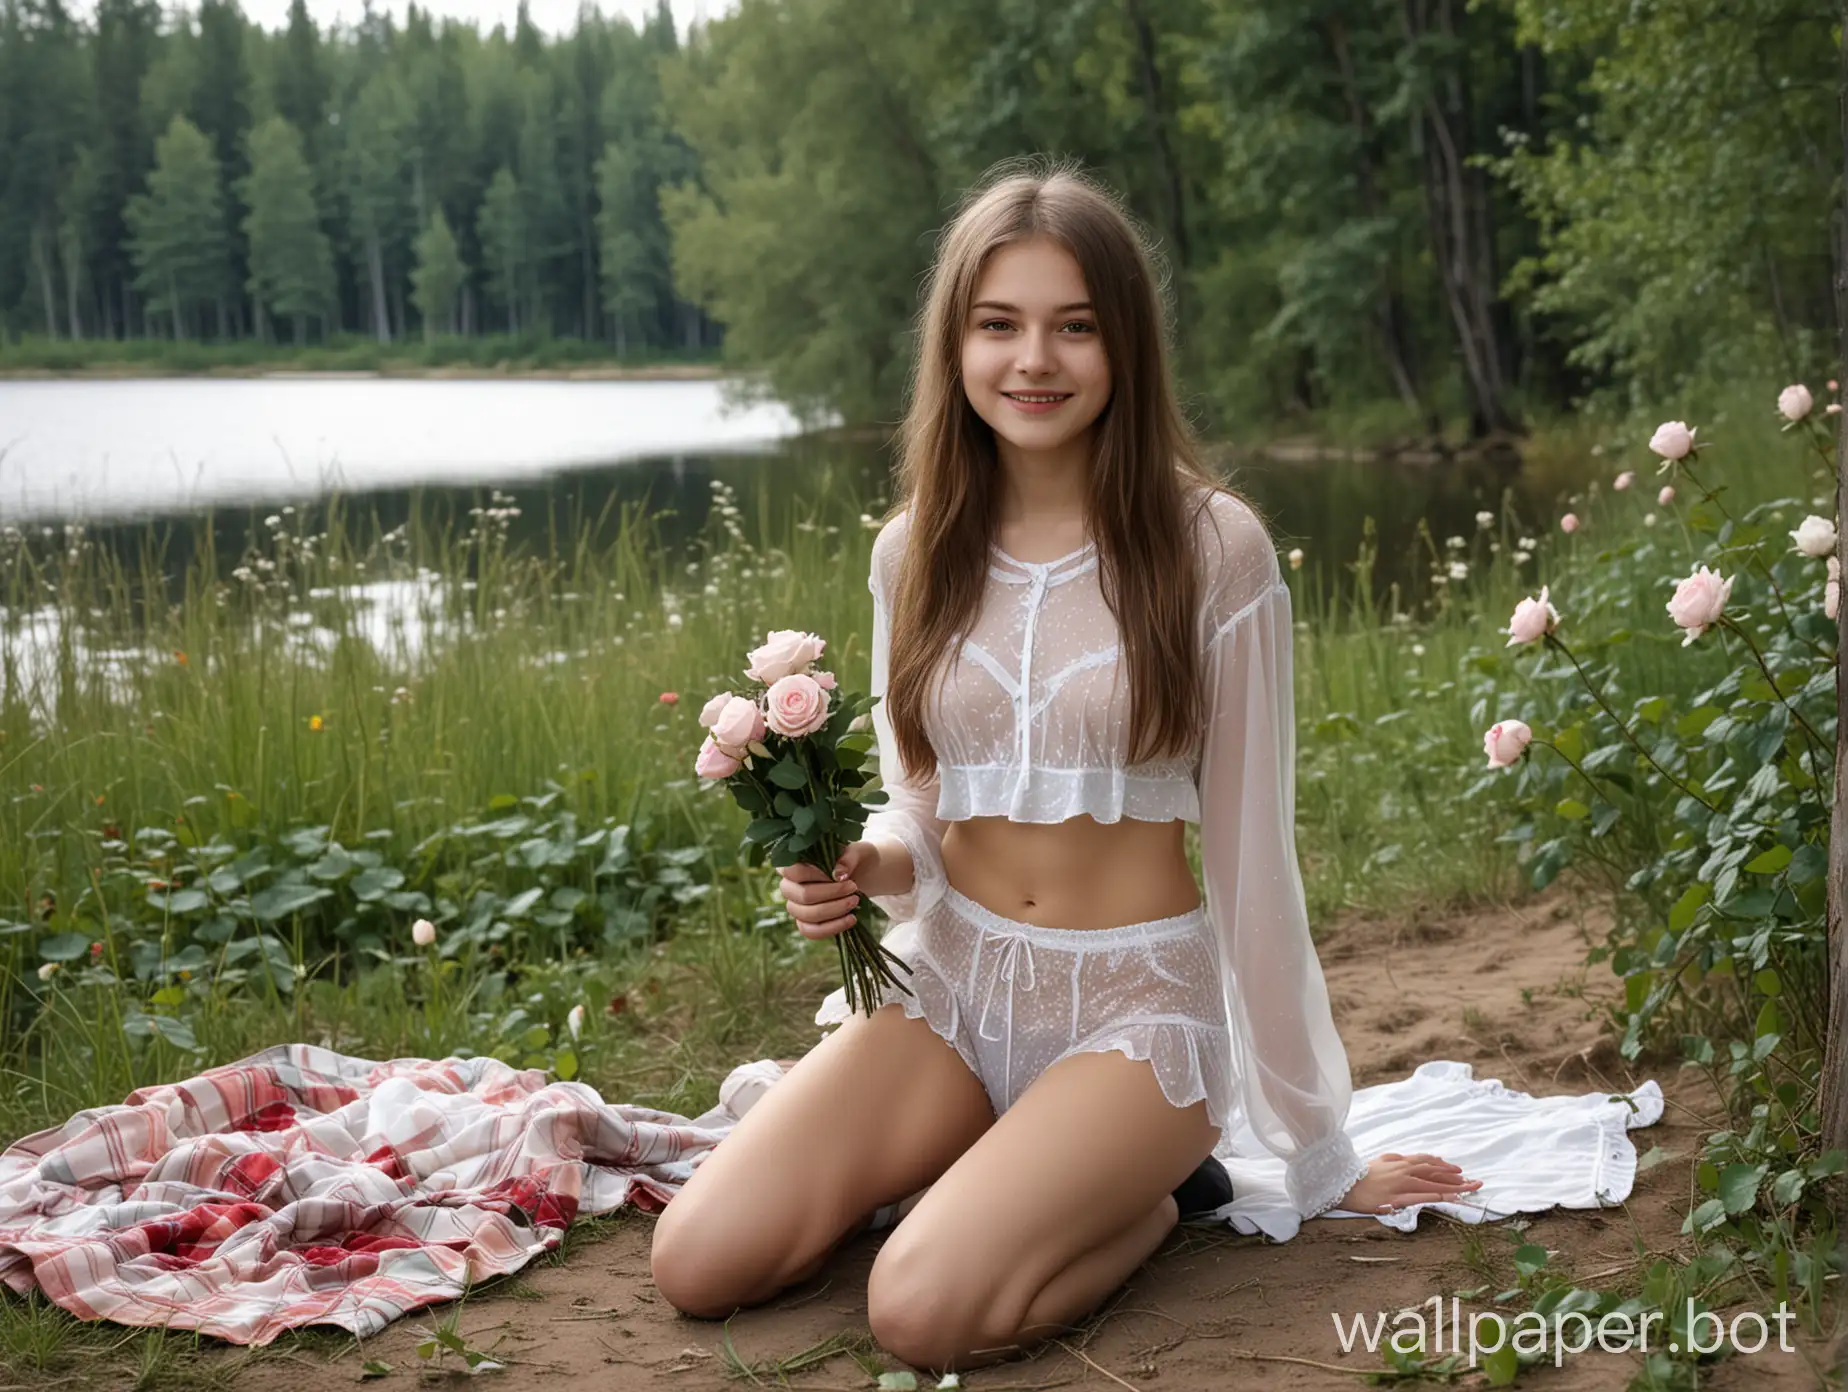 худая,  московская девушка 16 лет , прозрачные трусы , в тёмных колготках ,пикник в тайге у озера,  с букетом роз, первое свидание, подмигивает 